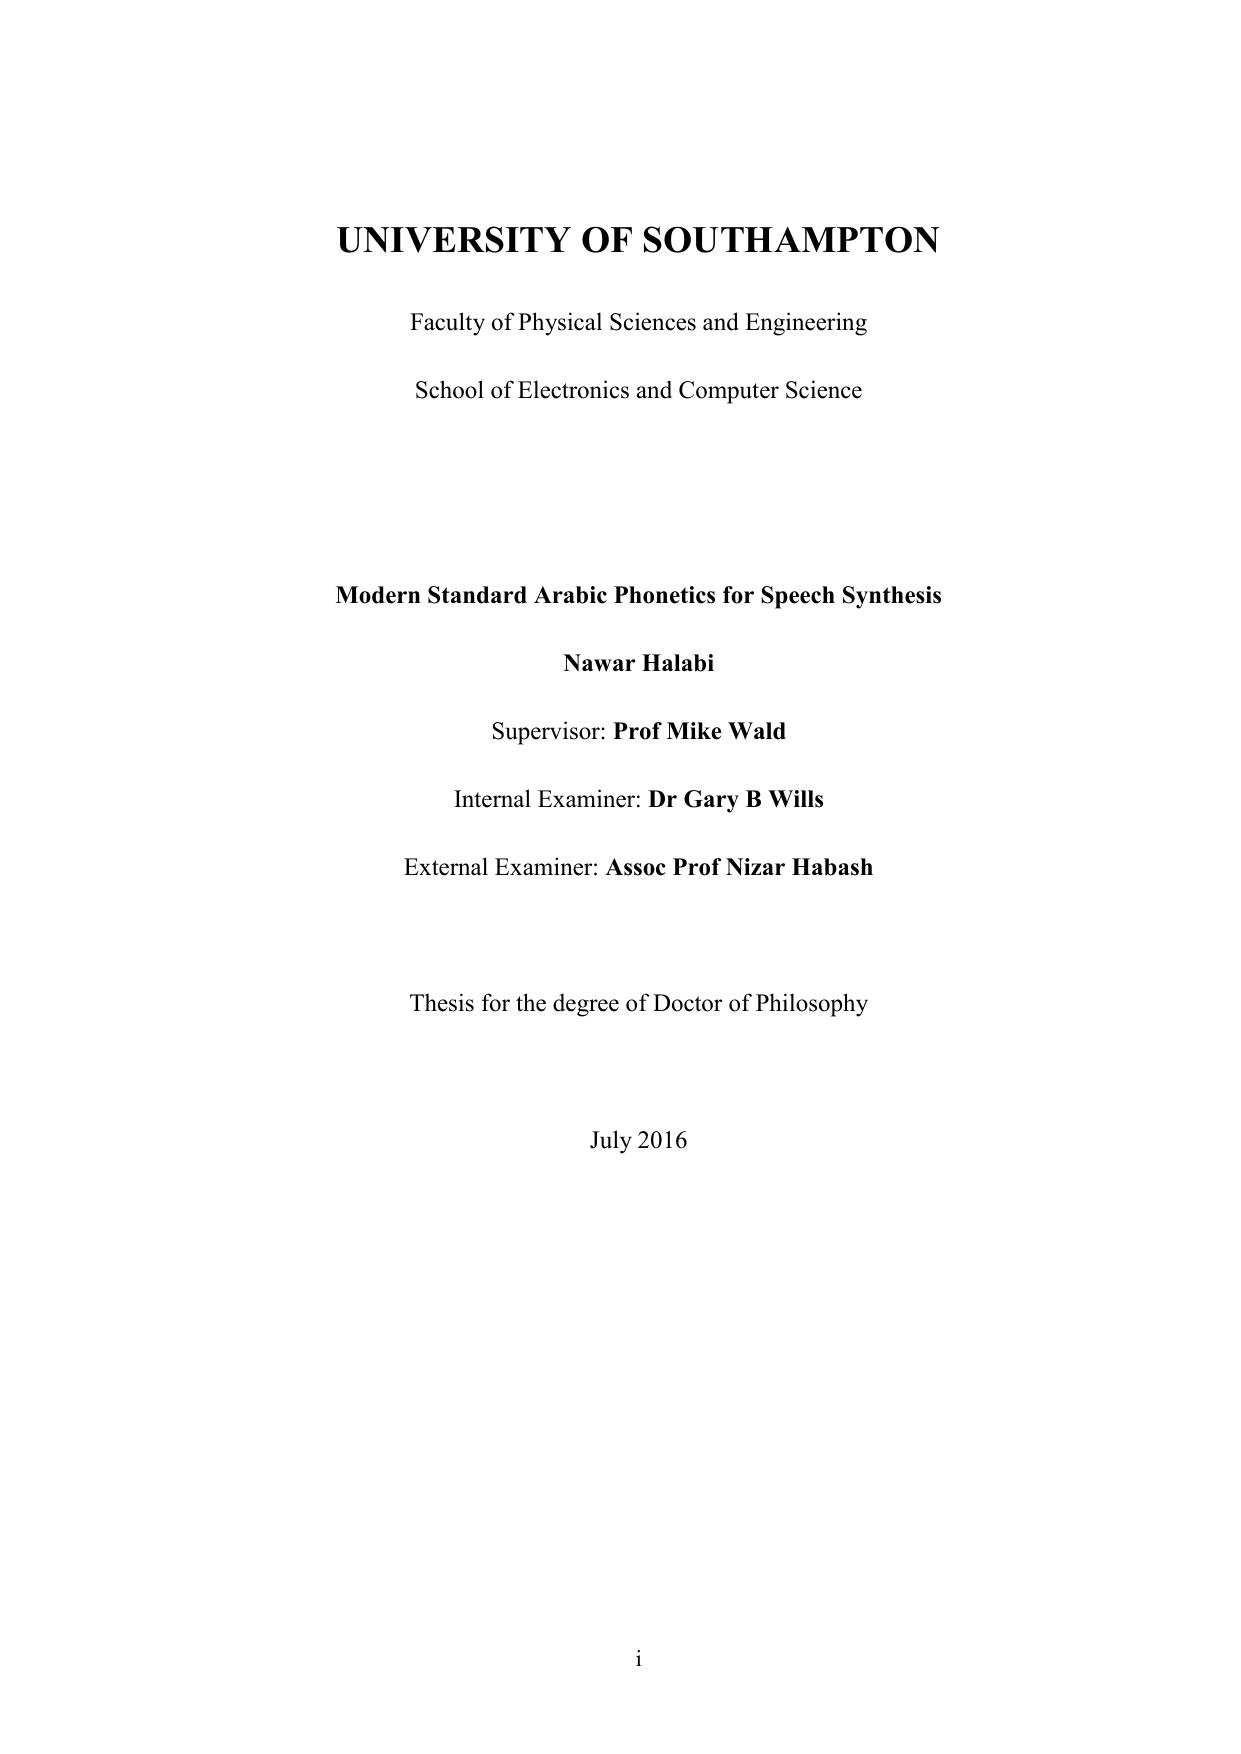 Nawar Halabi PhD Thesis Revised   2016